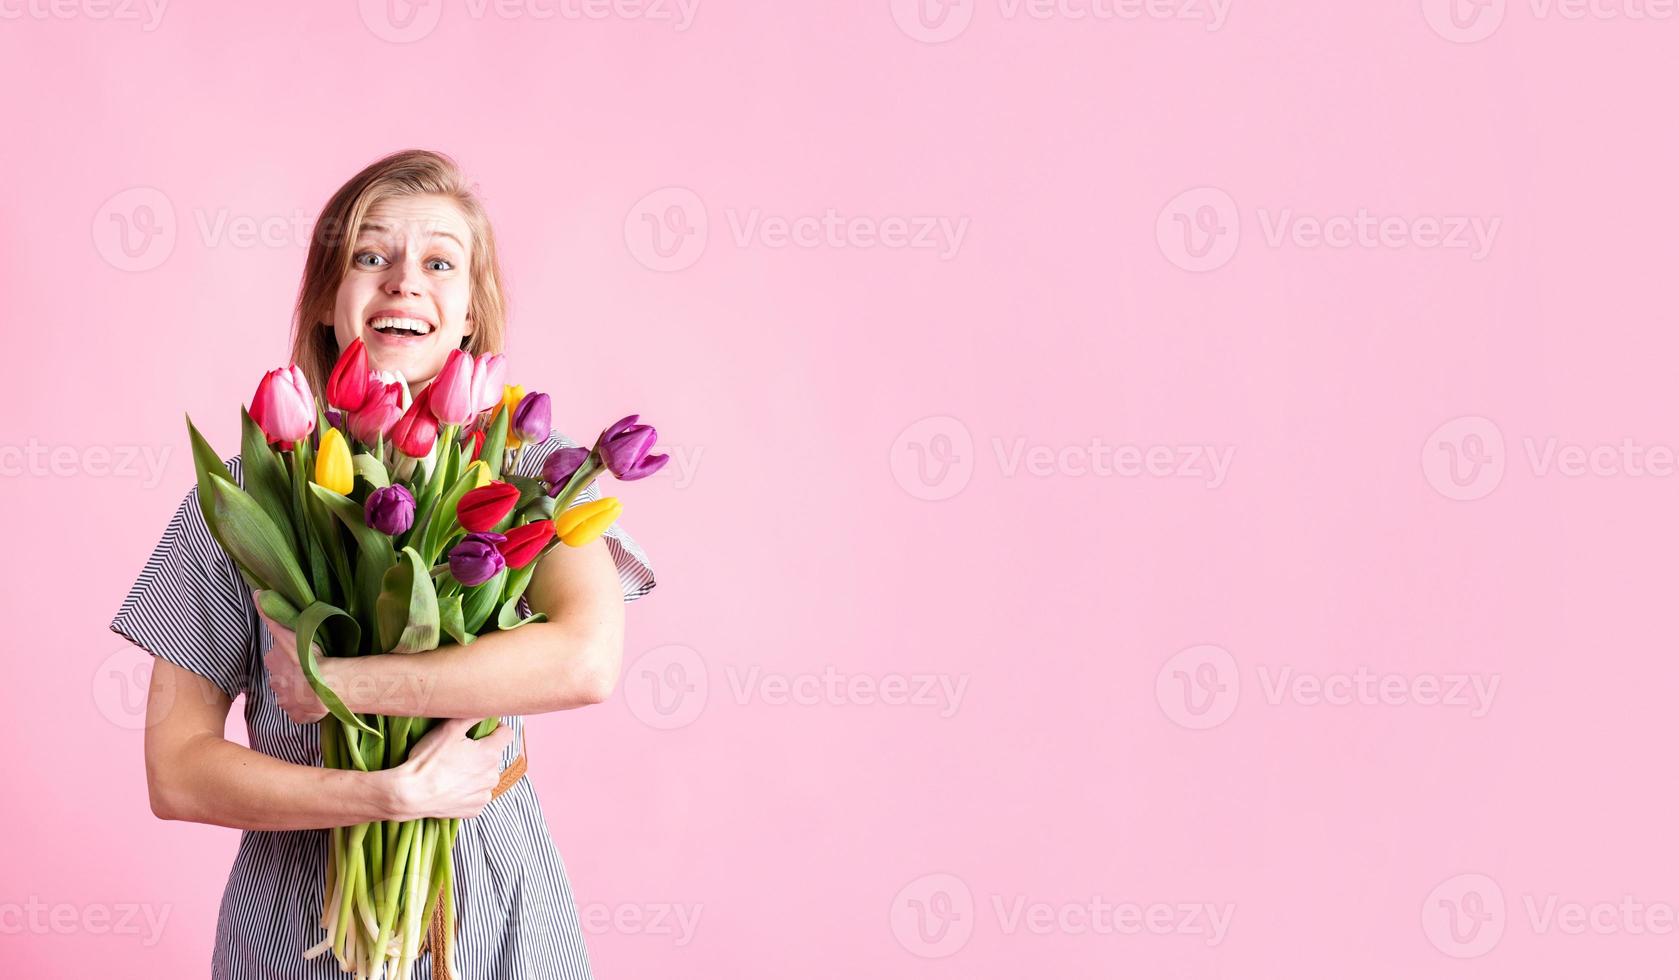 kvinna med bukett med färska tulpaner isolerad på rosa bakgrund foto